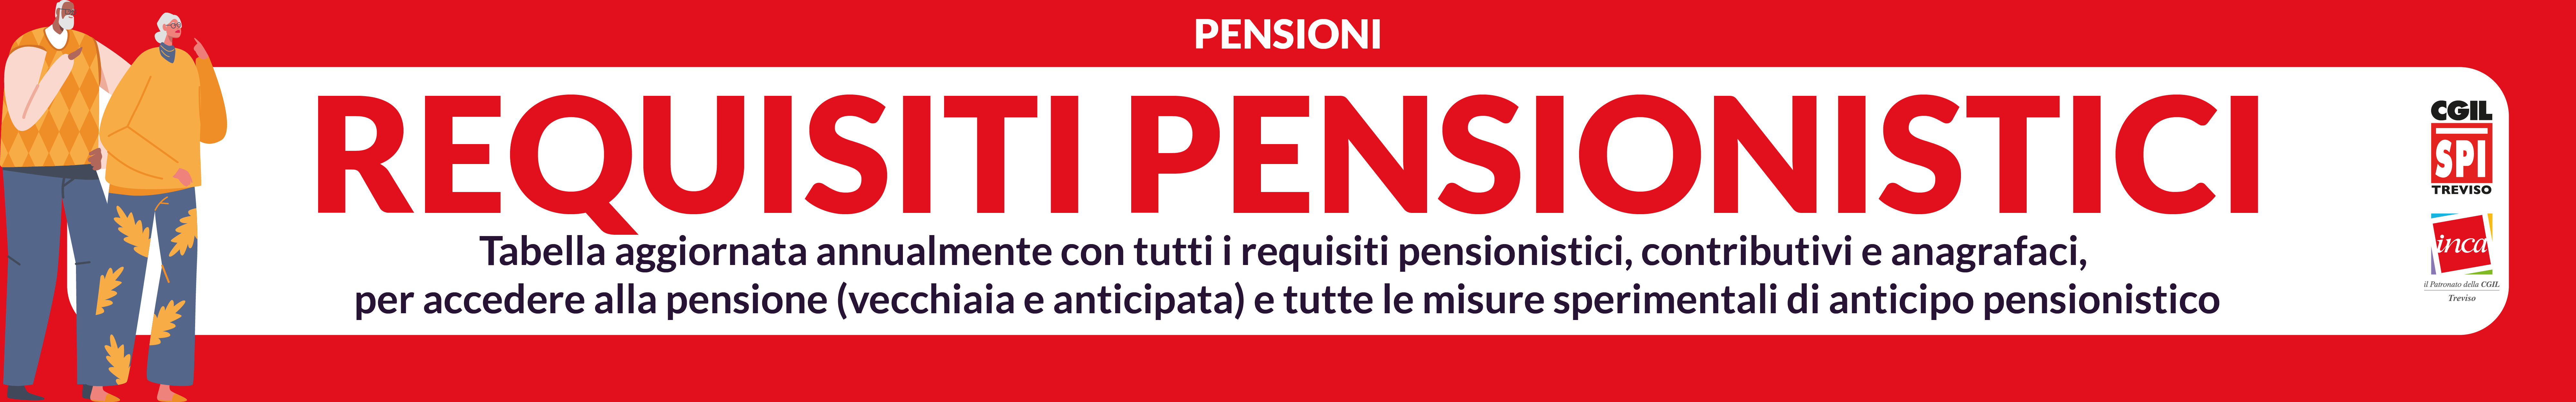 Requisiti pensionistici